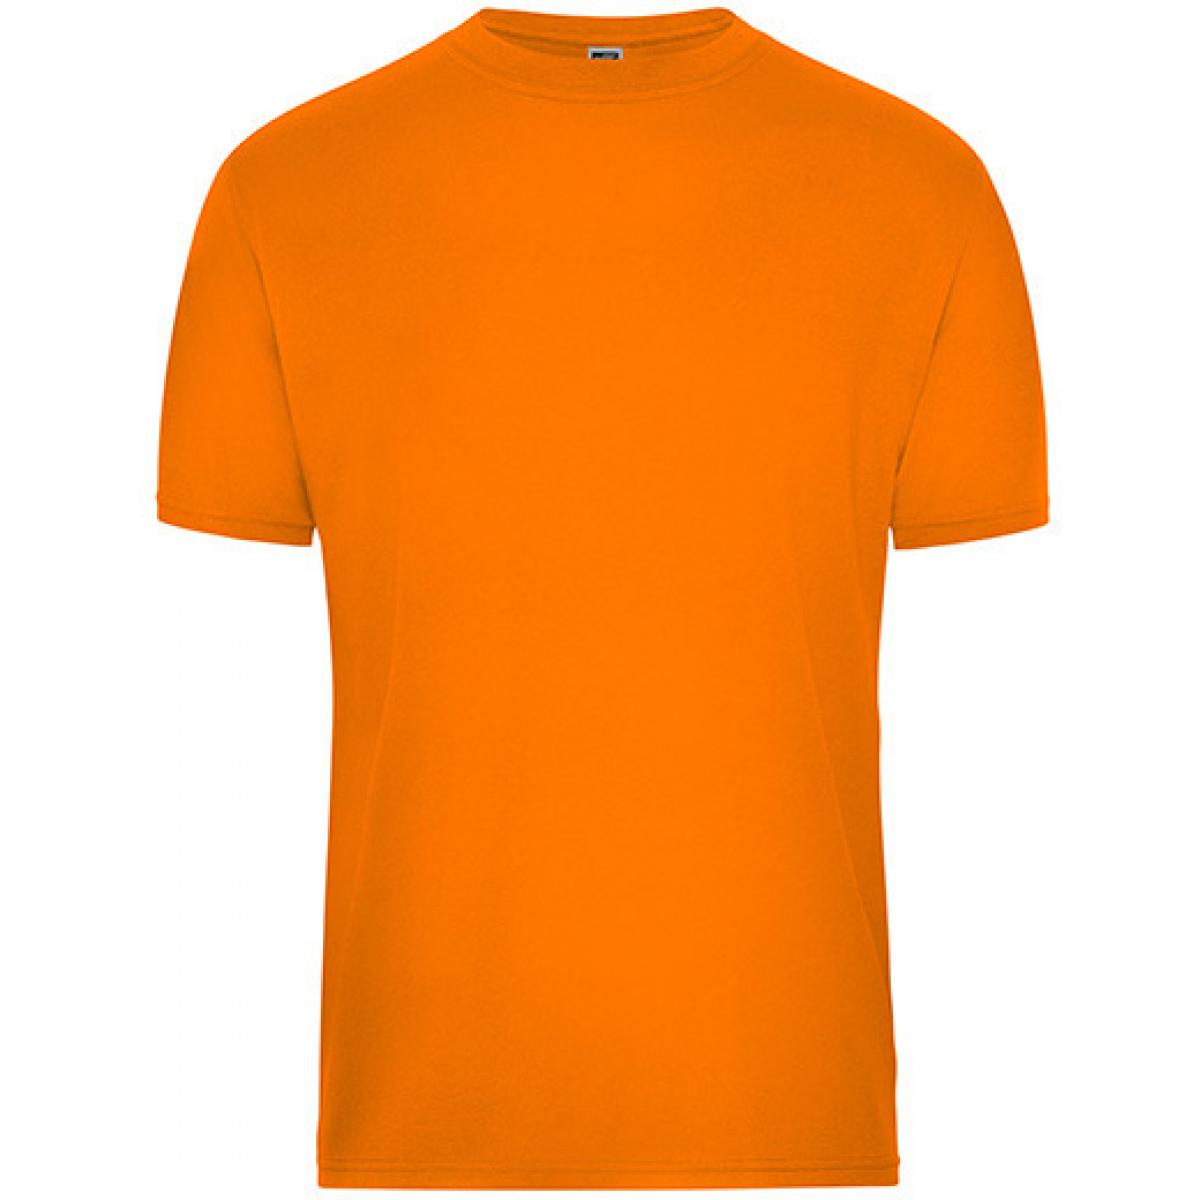 Hersteller: James+Nicholson Herstellernummer: JN1808 Artikelbezeichnung: Men‘s BIO Workwear T-Shirt, Waschbar bis 60 °C Farbe: Orange